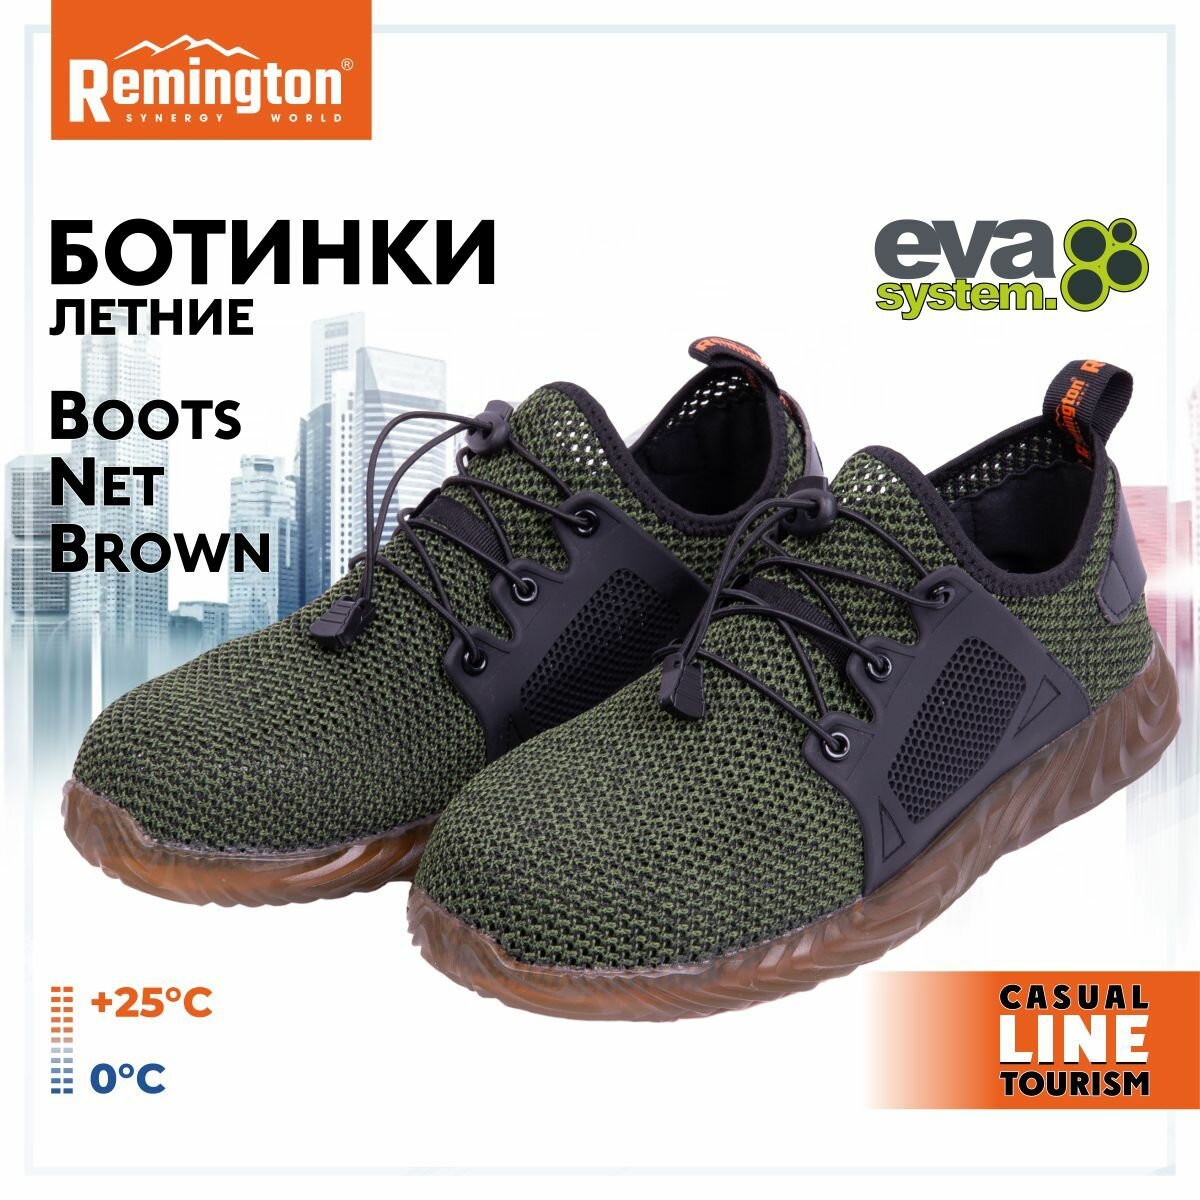 Ботинки Remington Boots Net Brown р. 41 RU0044-901